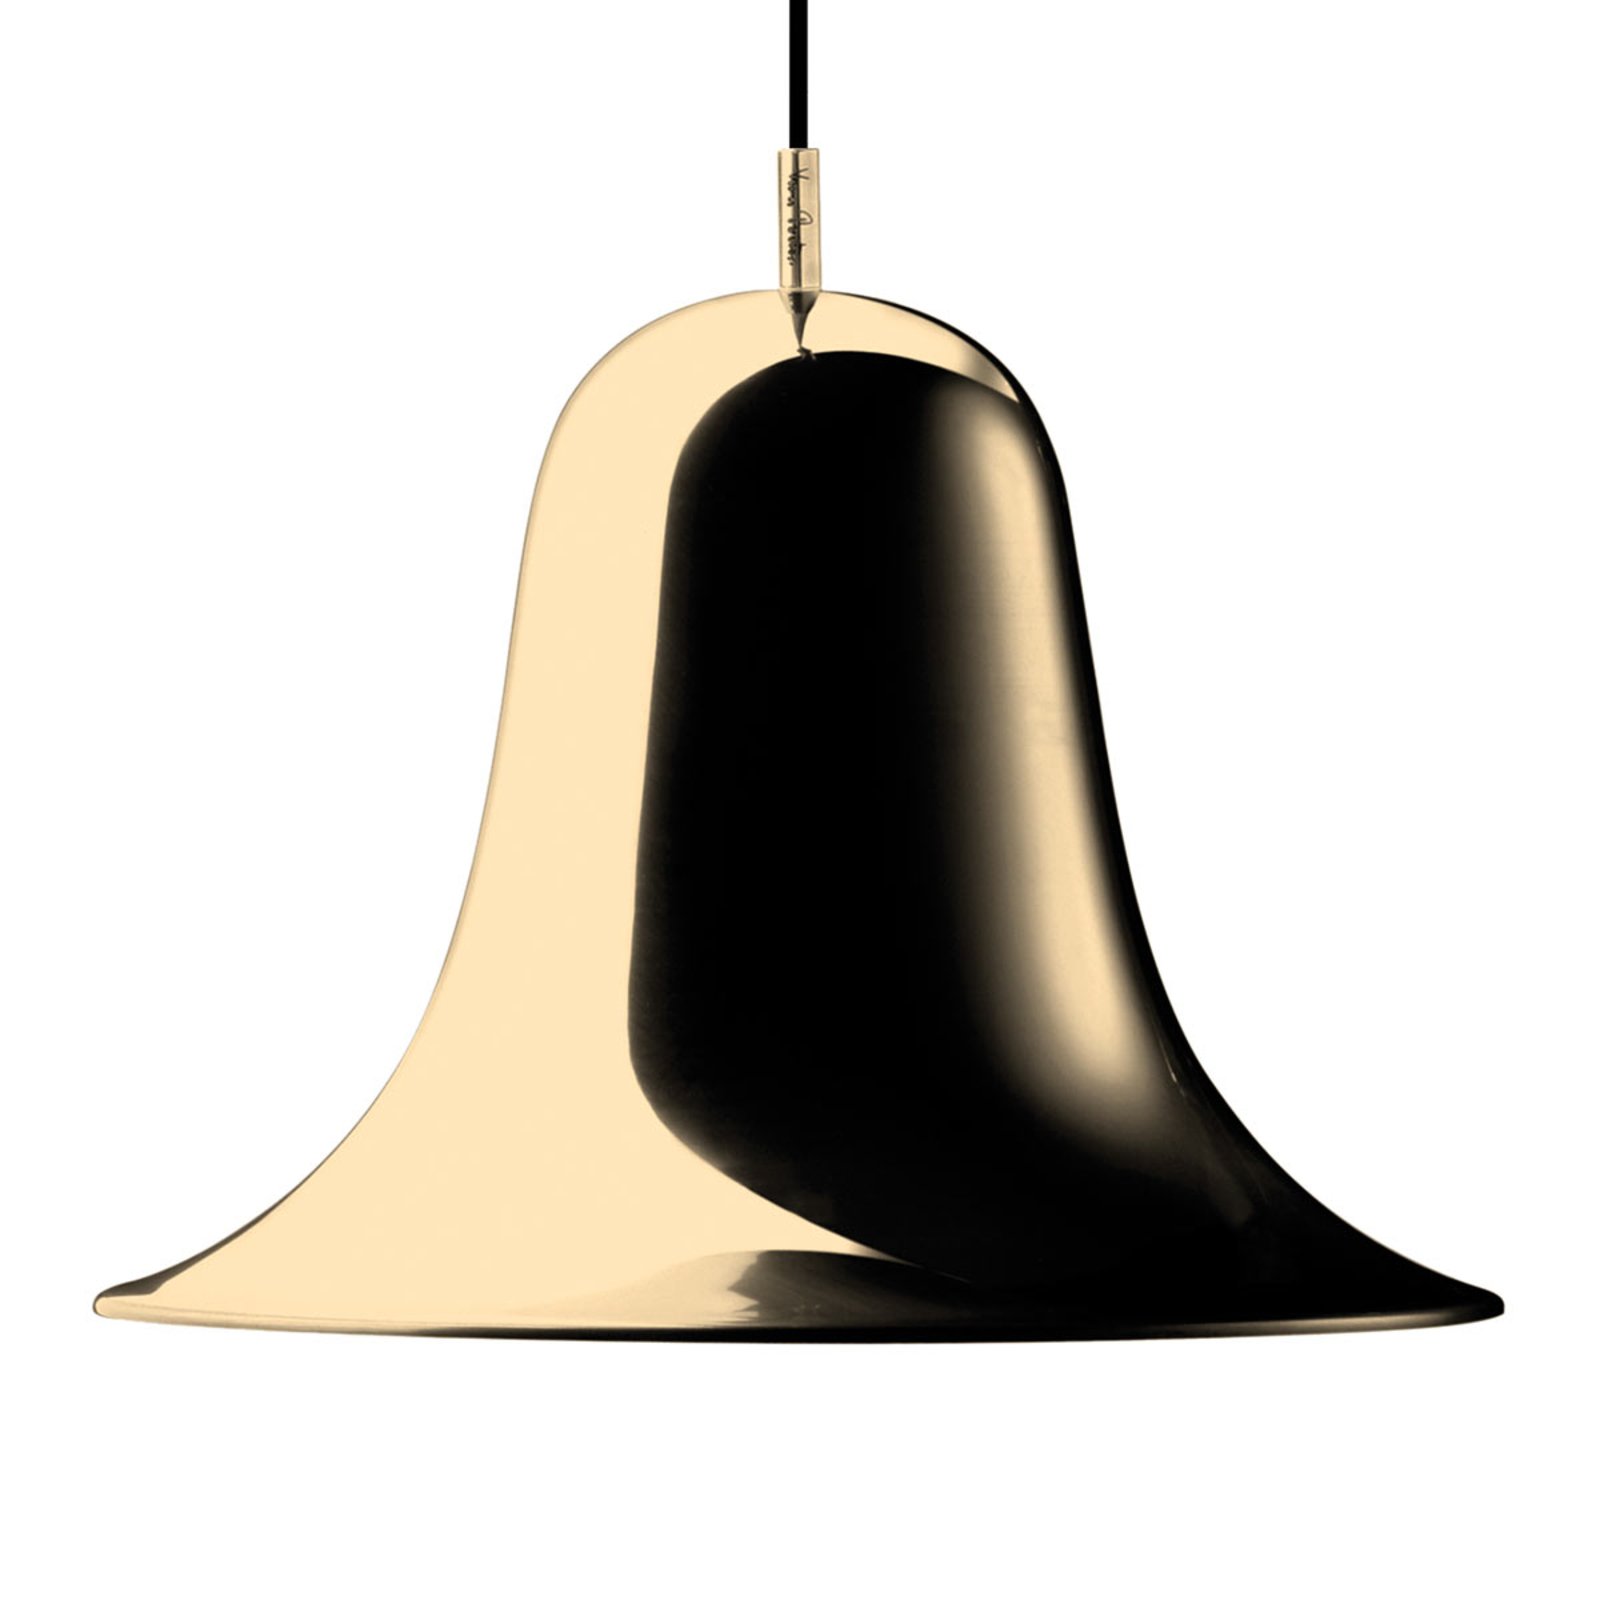 VERPAN Pantop hanglamp, Ø 30 cm, messing glanzend